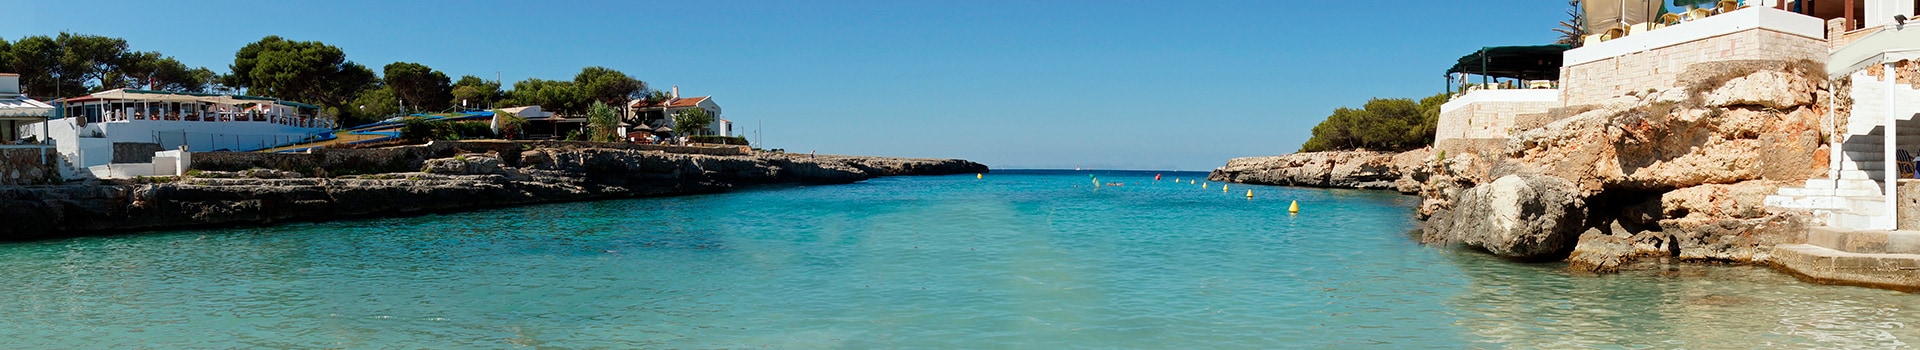 Billetes de Barco de Ibiza (ciudad) a Menorca